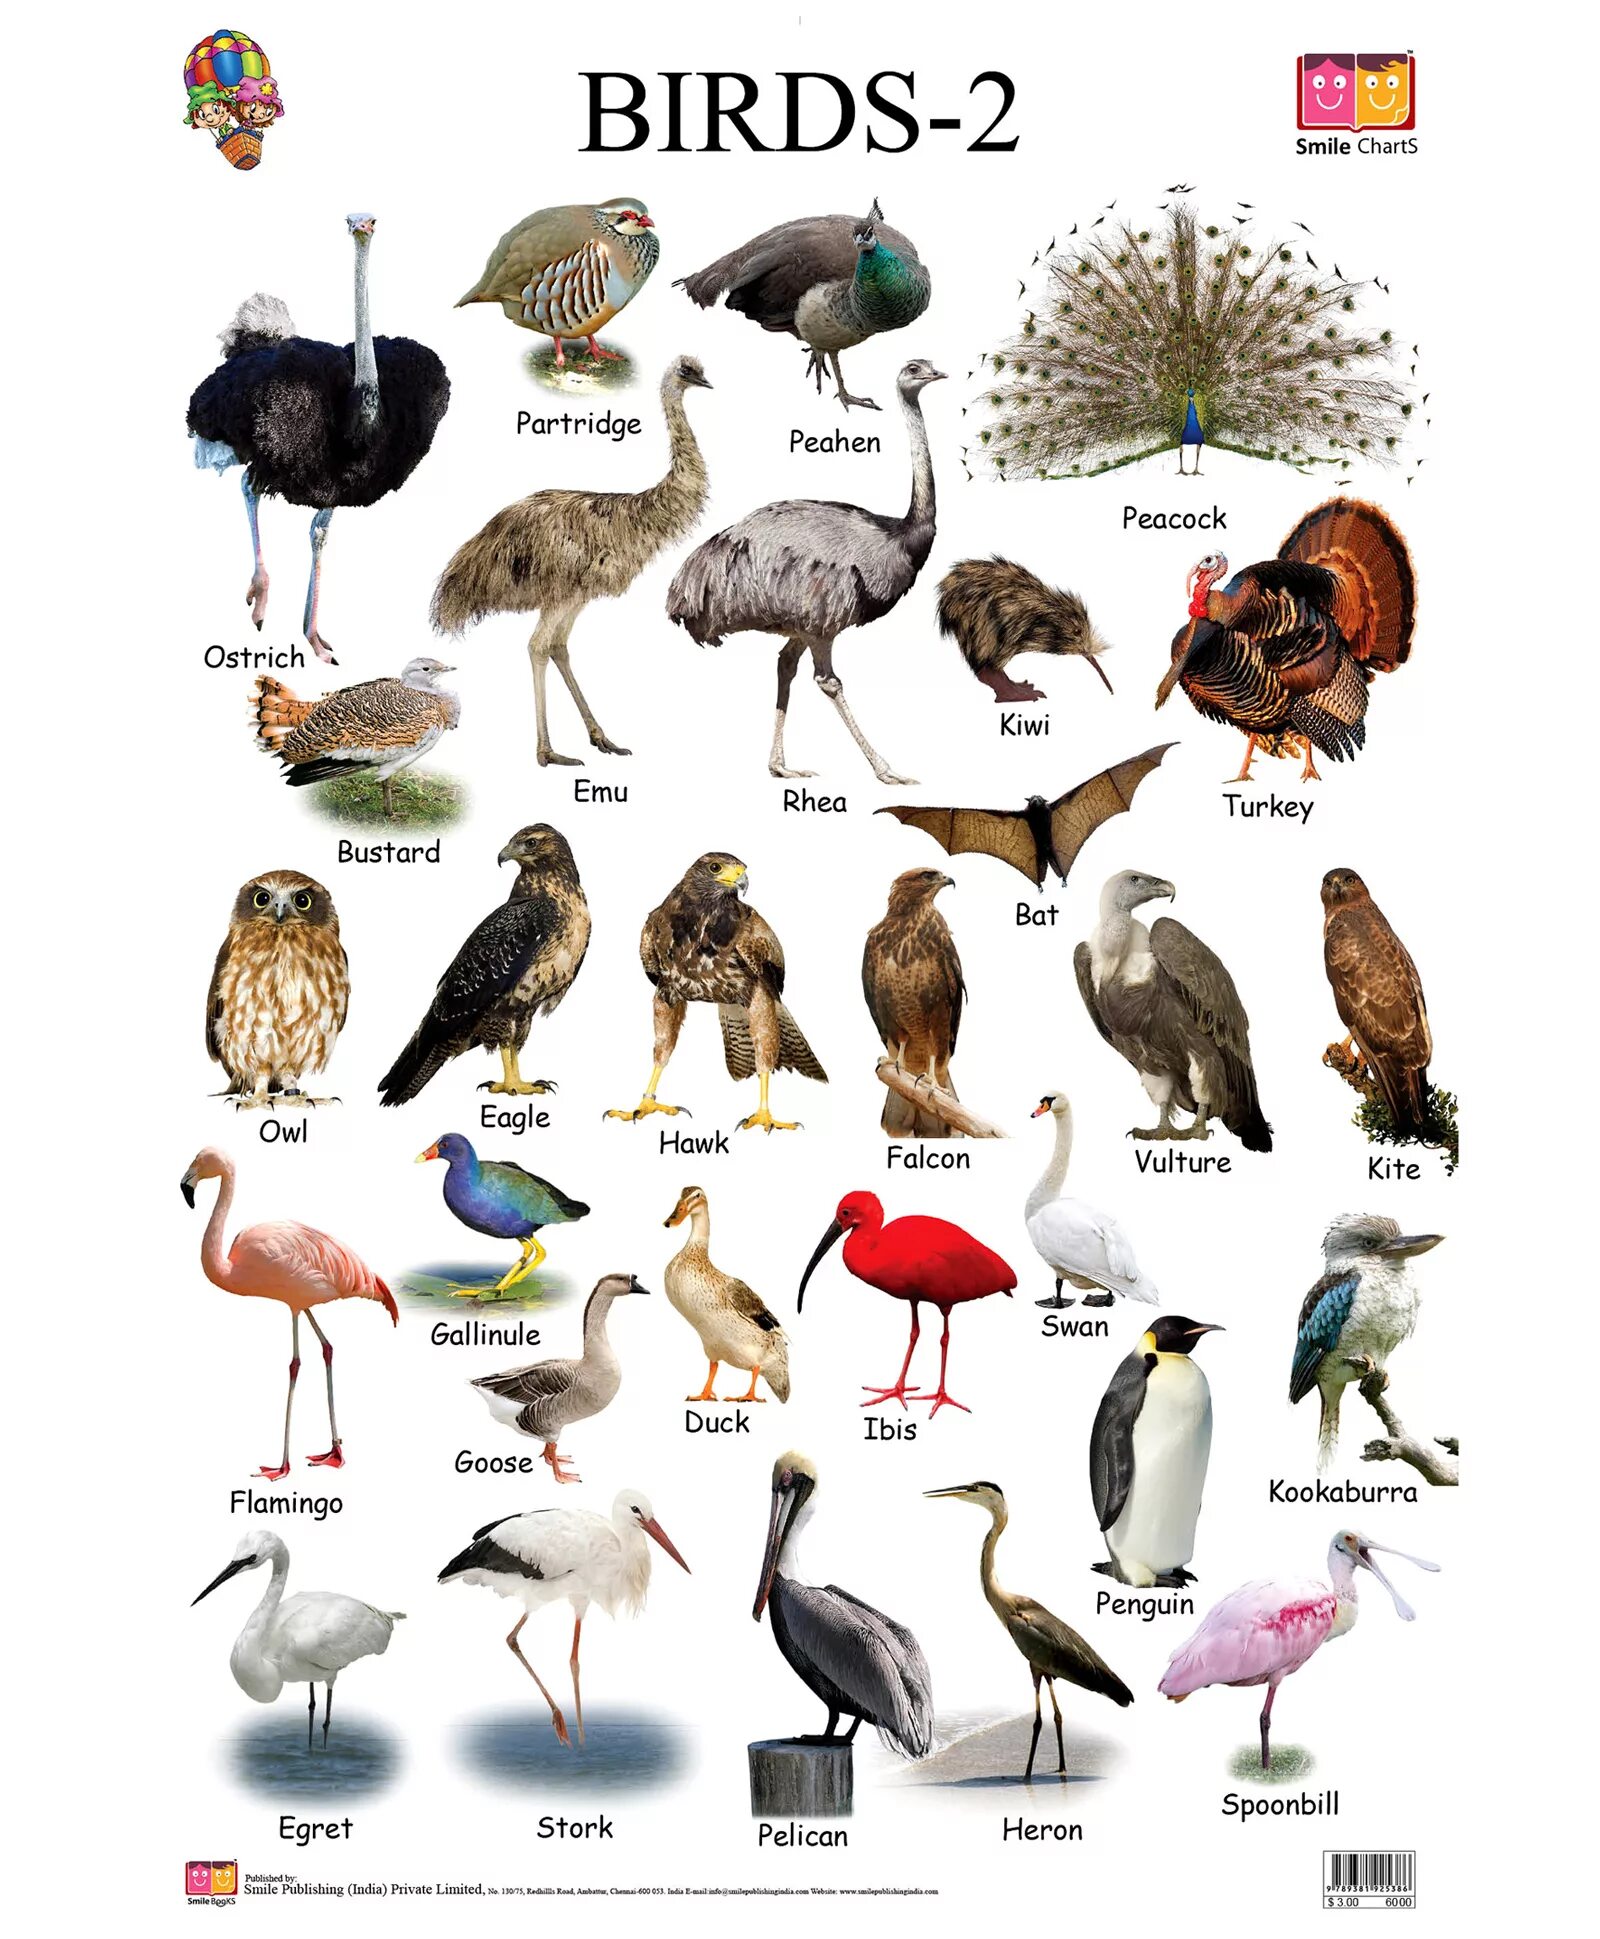 Птицы на английском. Название животных и птиц. Названия птиц на английском. Названия животных и птицанглийски.